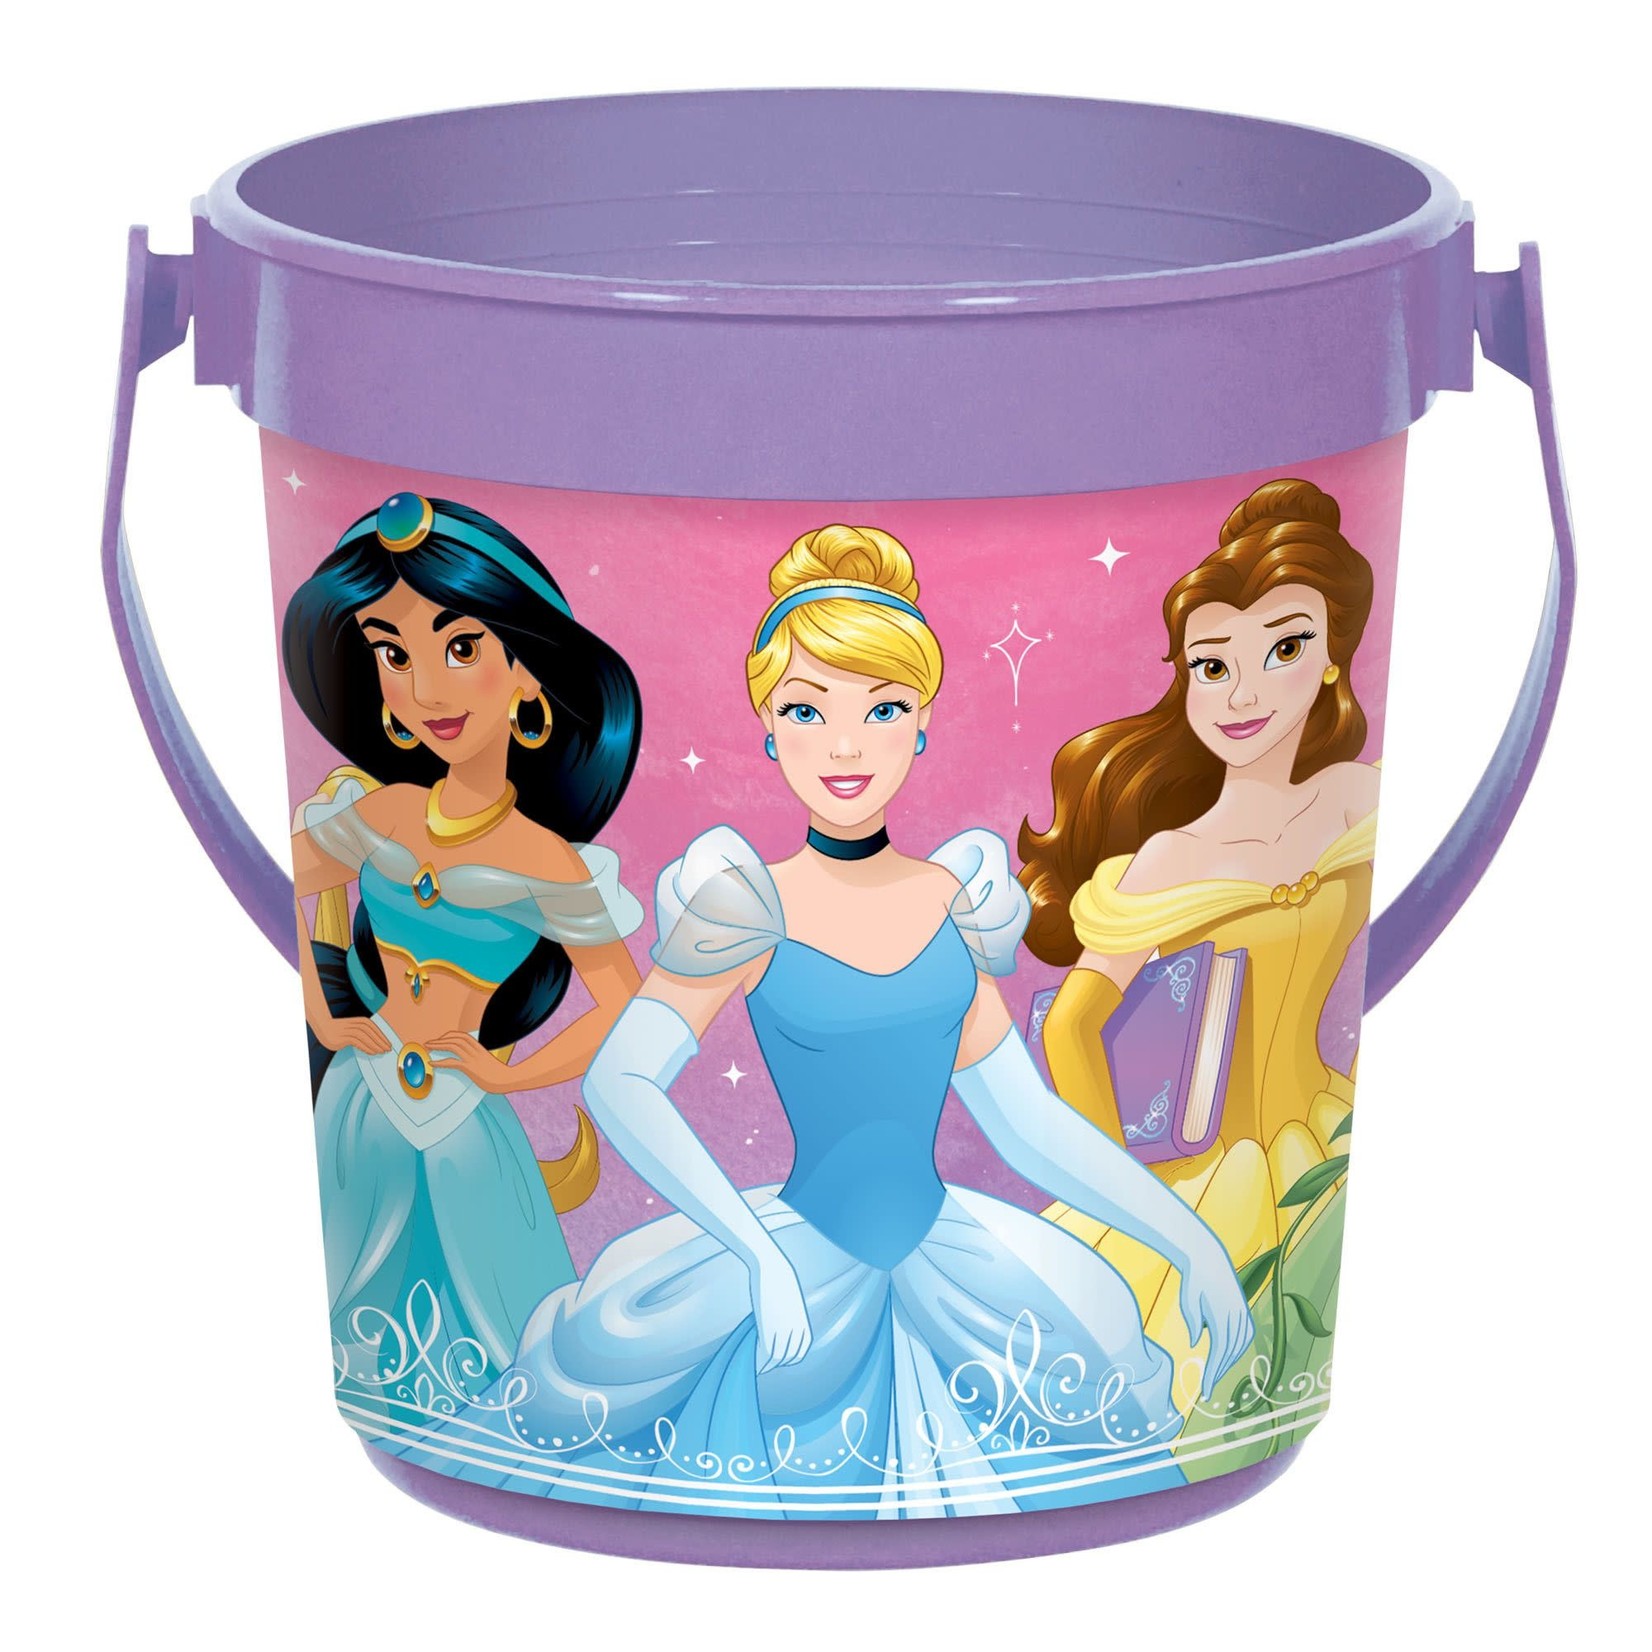 Disney Princess Plastic Container